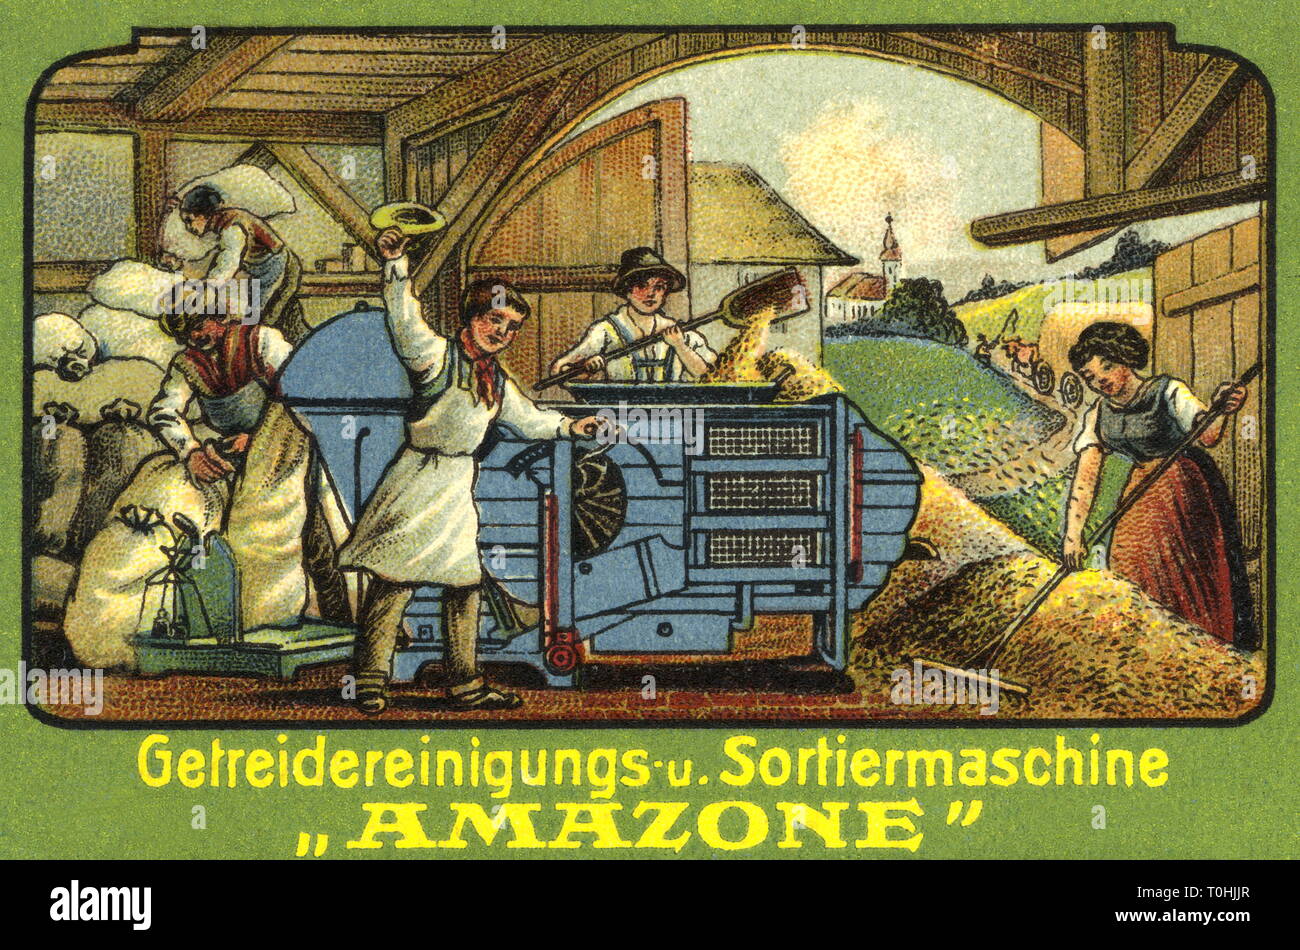 Landwirtschaft, Werbung für landwirtschaftliche Maschinen der Amazonen Werk  Heinrich Dreyer, Arbeiter am Korn Reinigung und-Sorter Amazon, Deutschland,  um 1910, Additional-Rights - Clearance-Info - Not-Available Stockfotografie  - Alamy